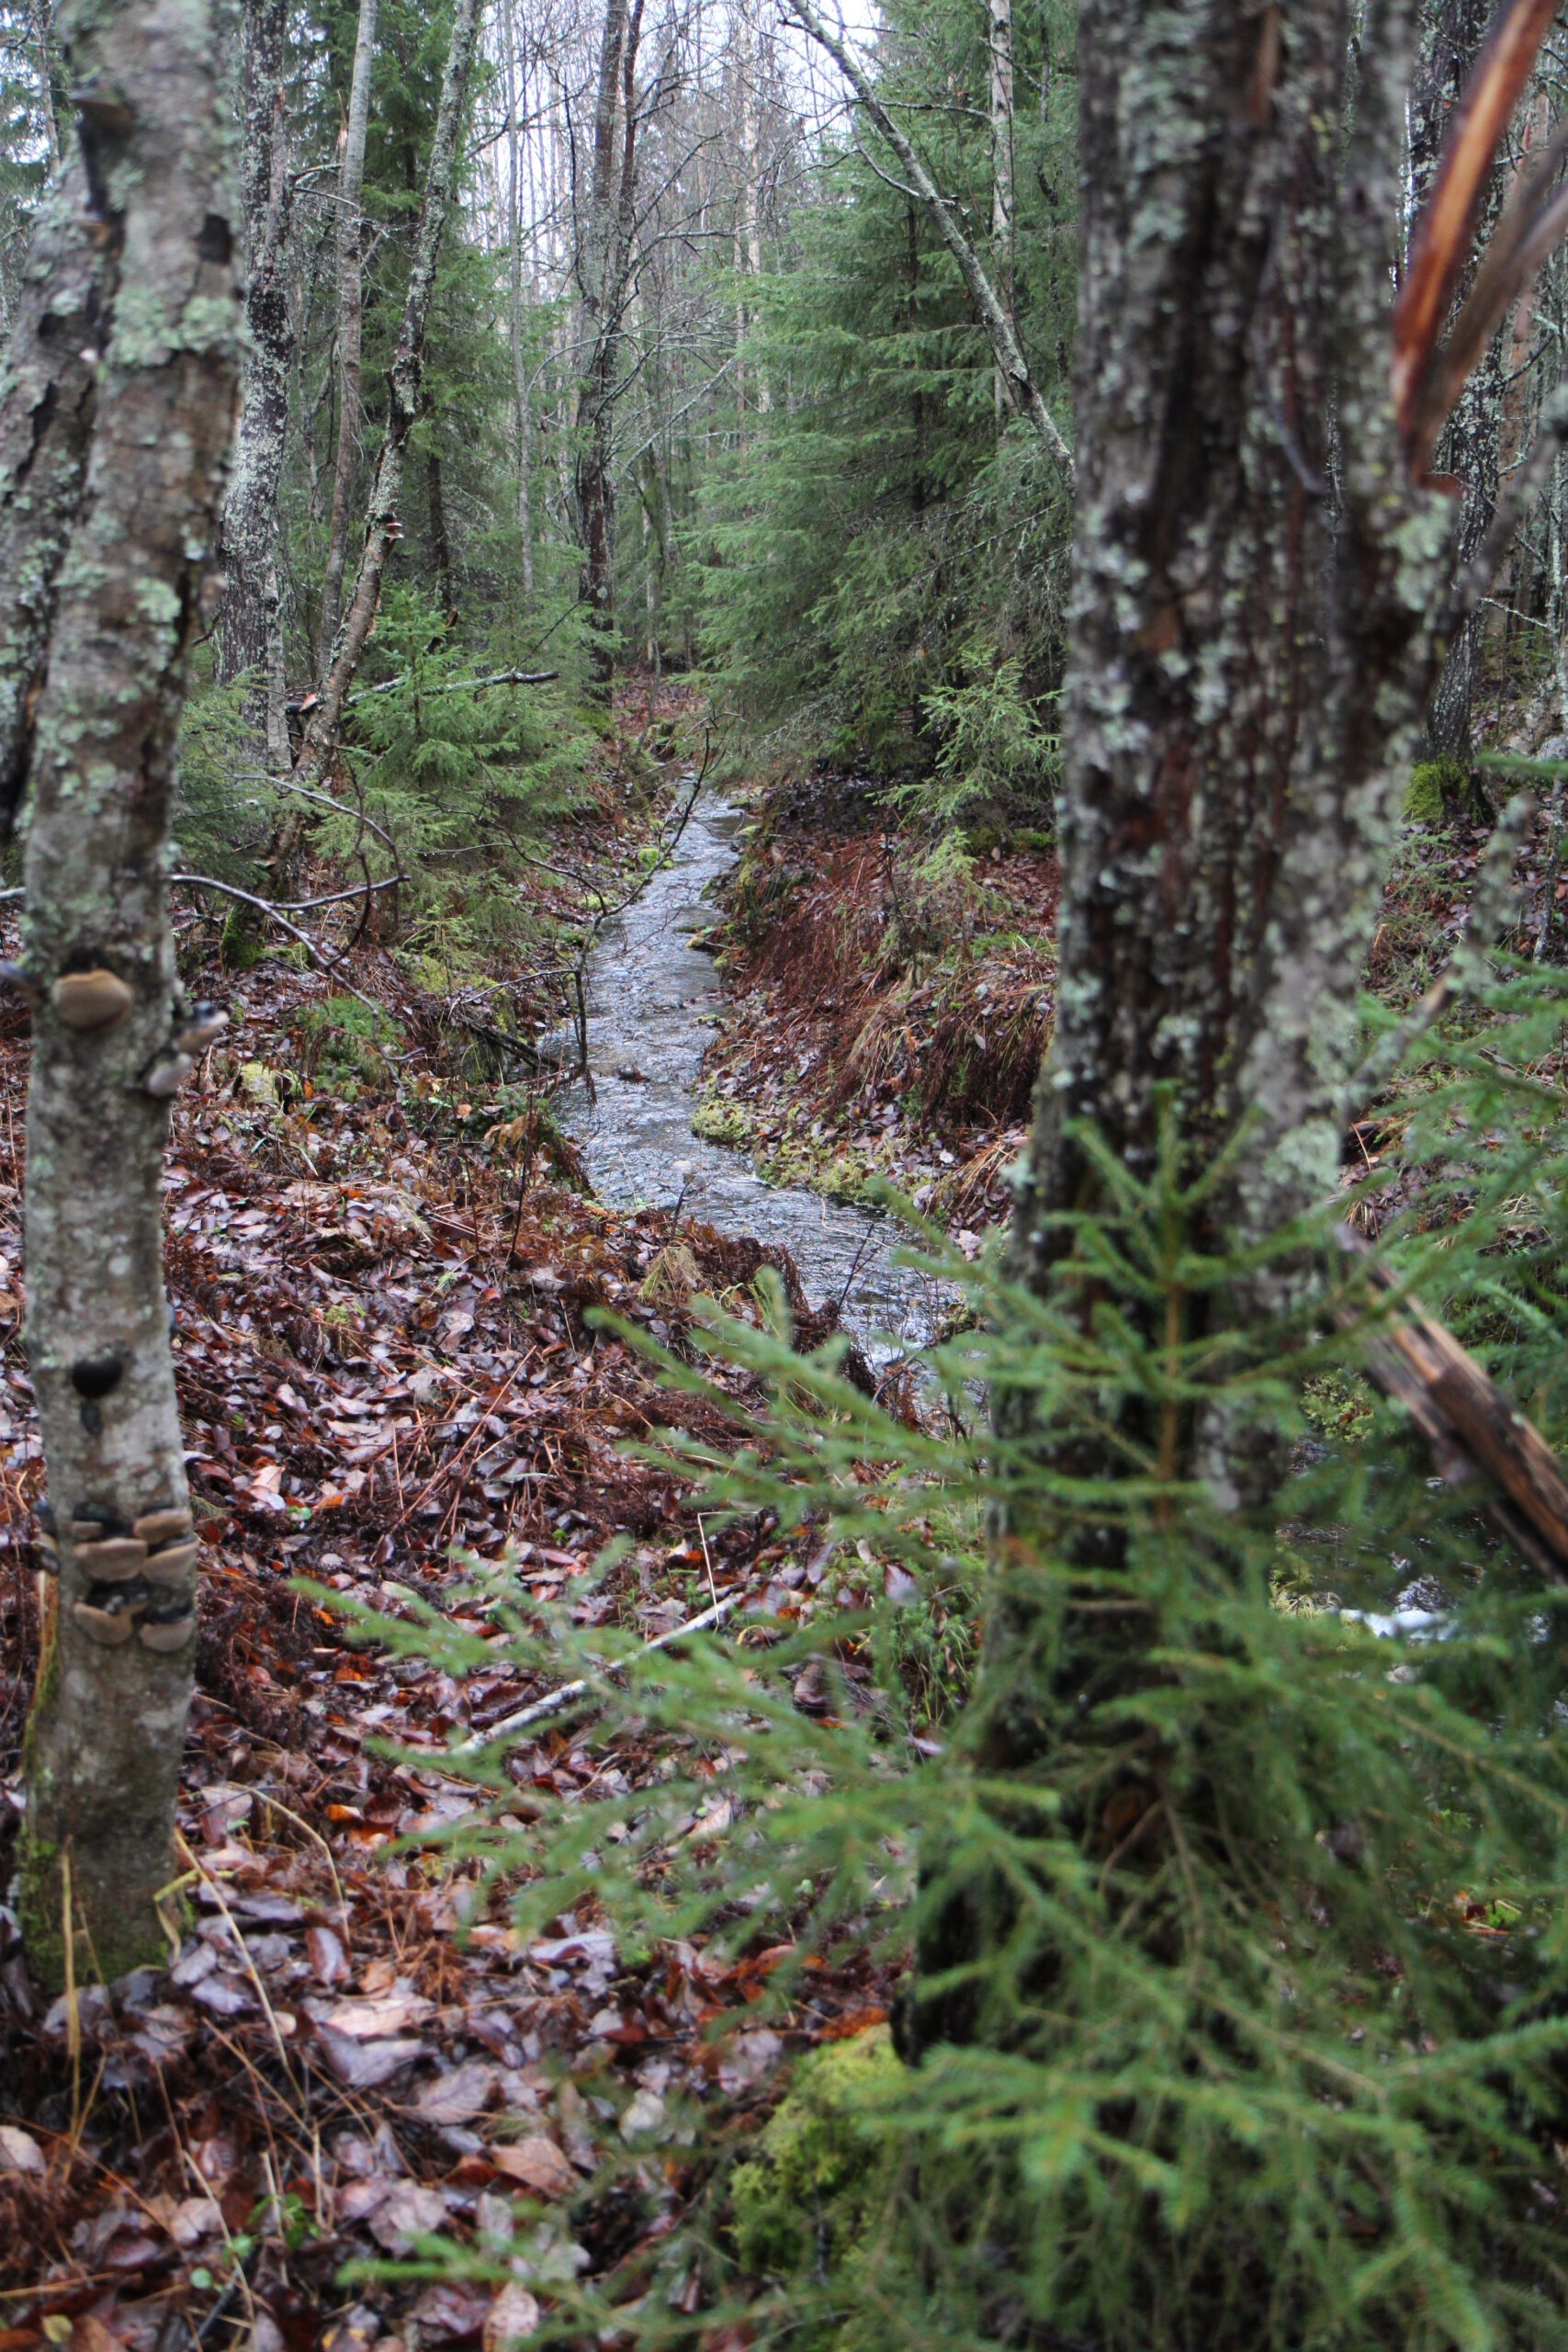 Ei-luonnontilainen puro sertifioidussa metsässä. Sertifiointi ei aseta vaatimuksia ei-luonnontilaisten purojen hoidolle, mutta puroympäristö on luonnollinen paikka esimerkiksi säästöpuille. Kuva: Krista Kimmo